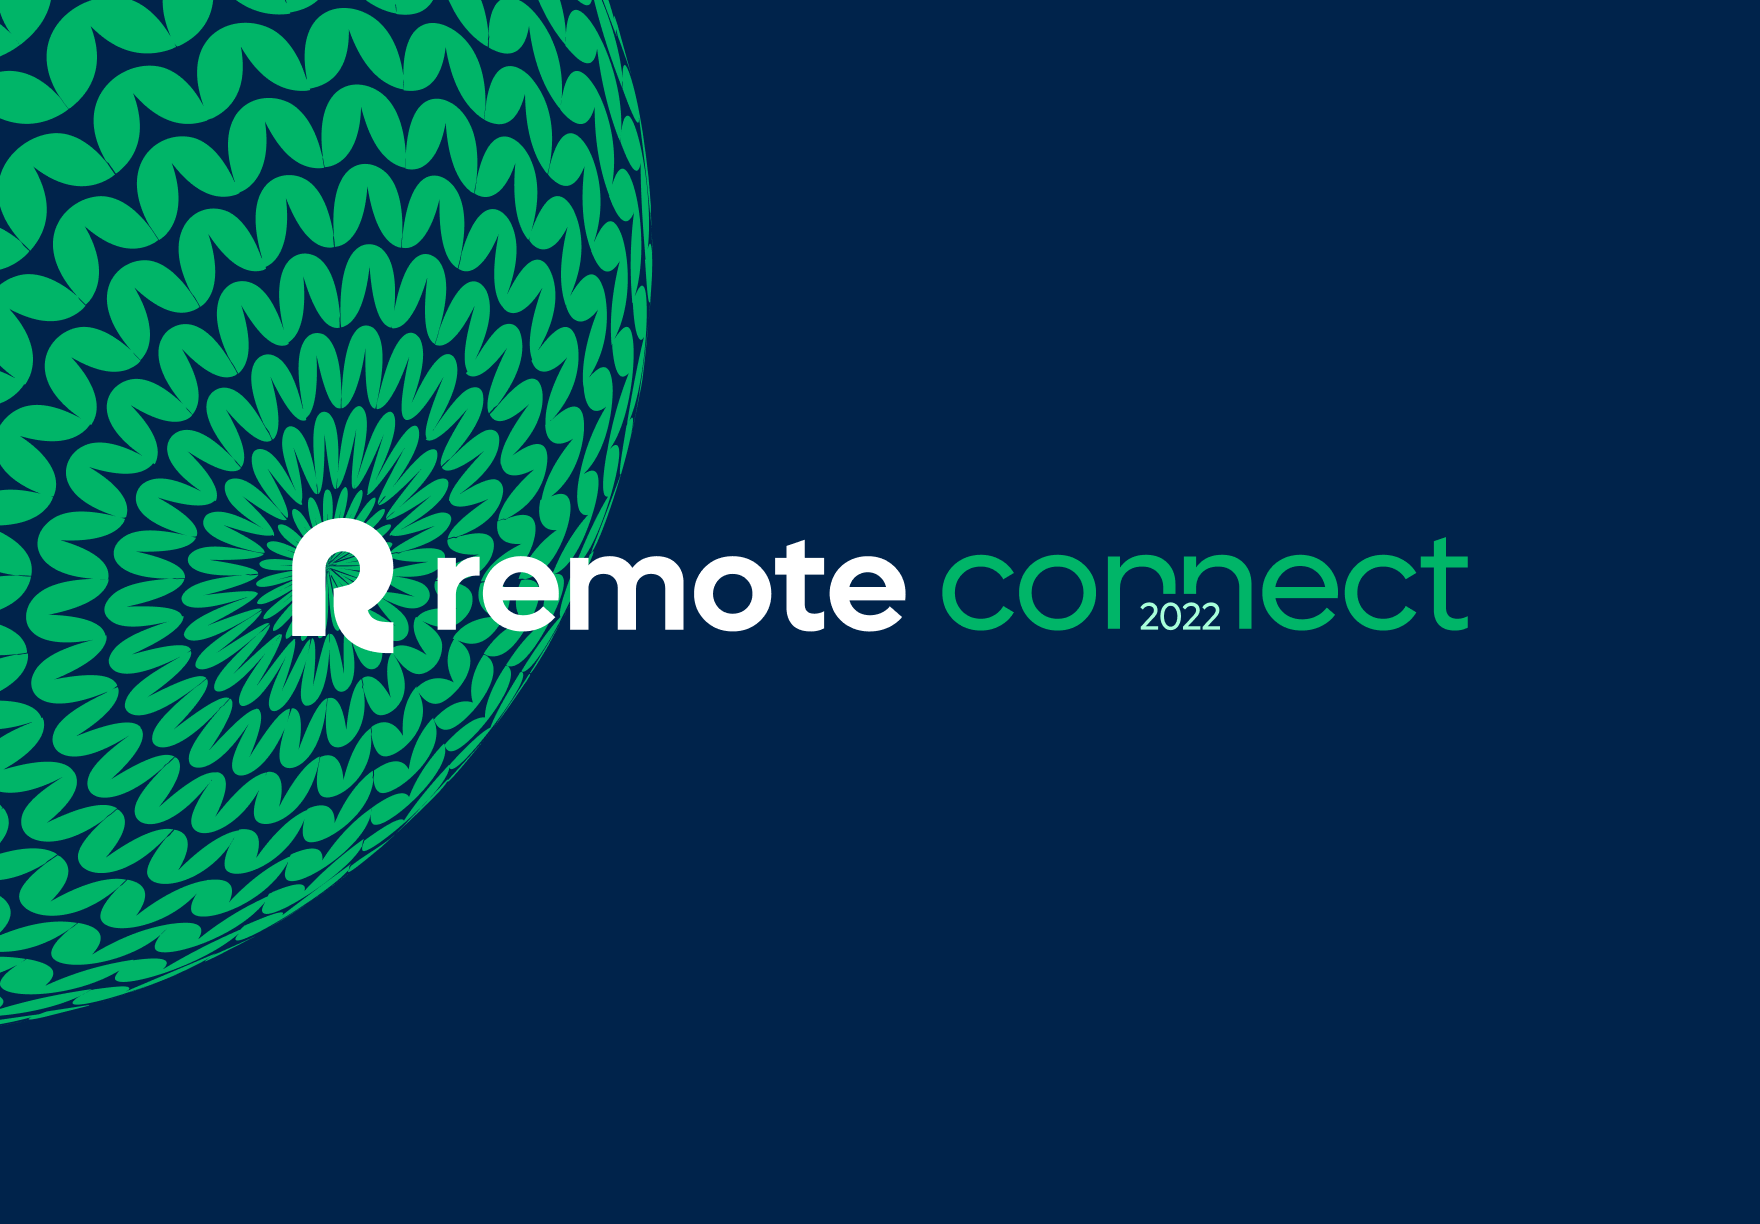 Remote Connect 2022 logo